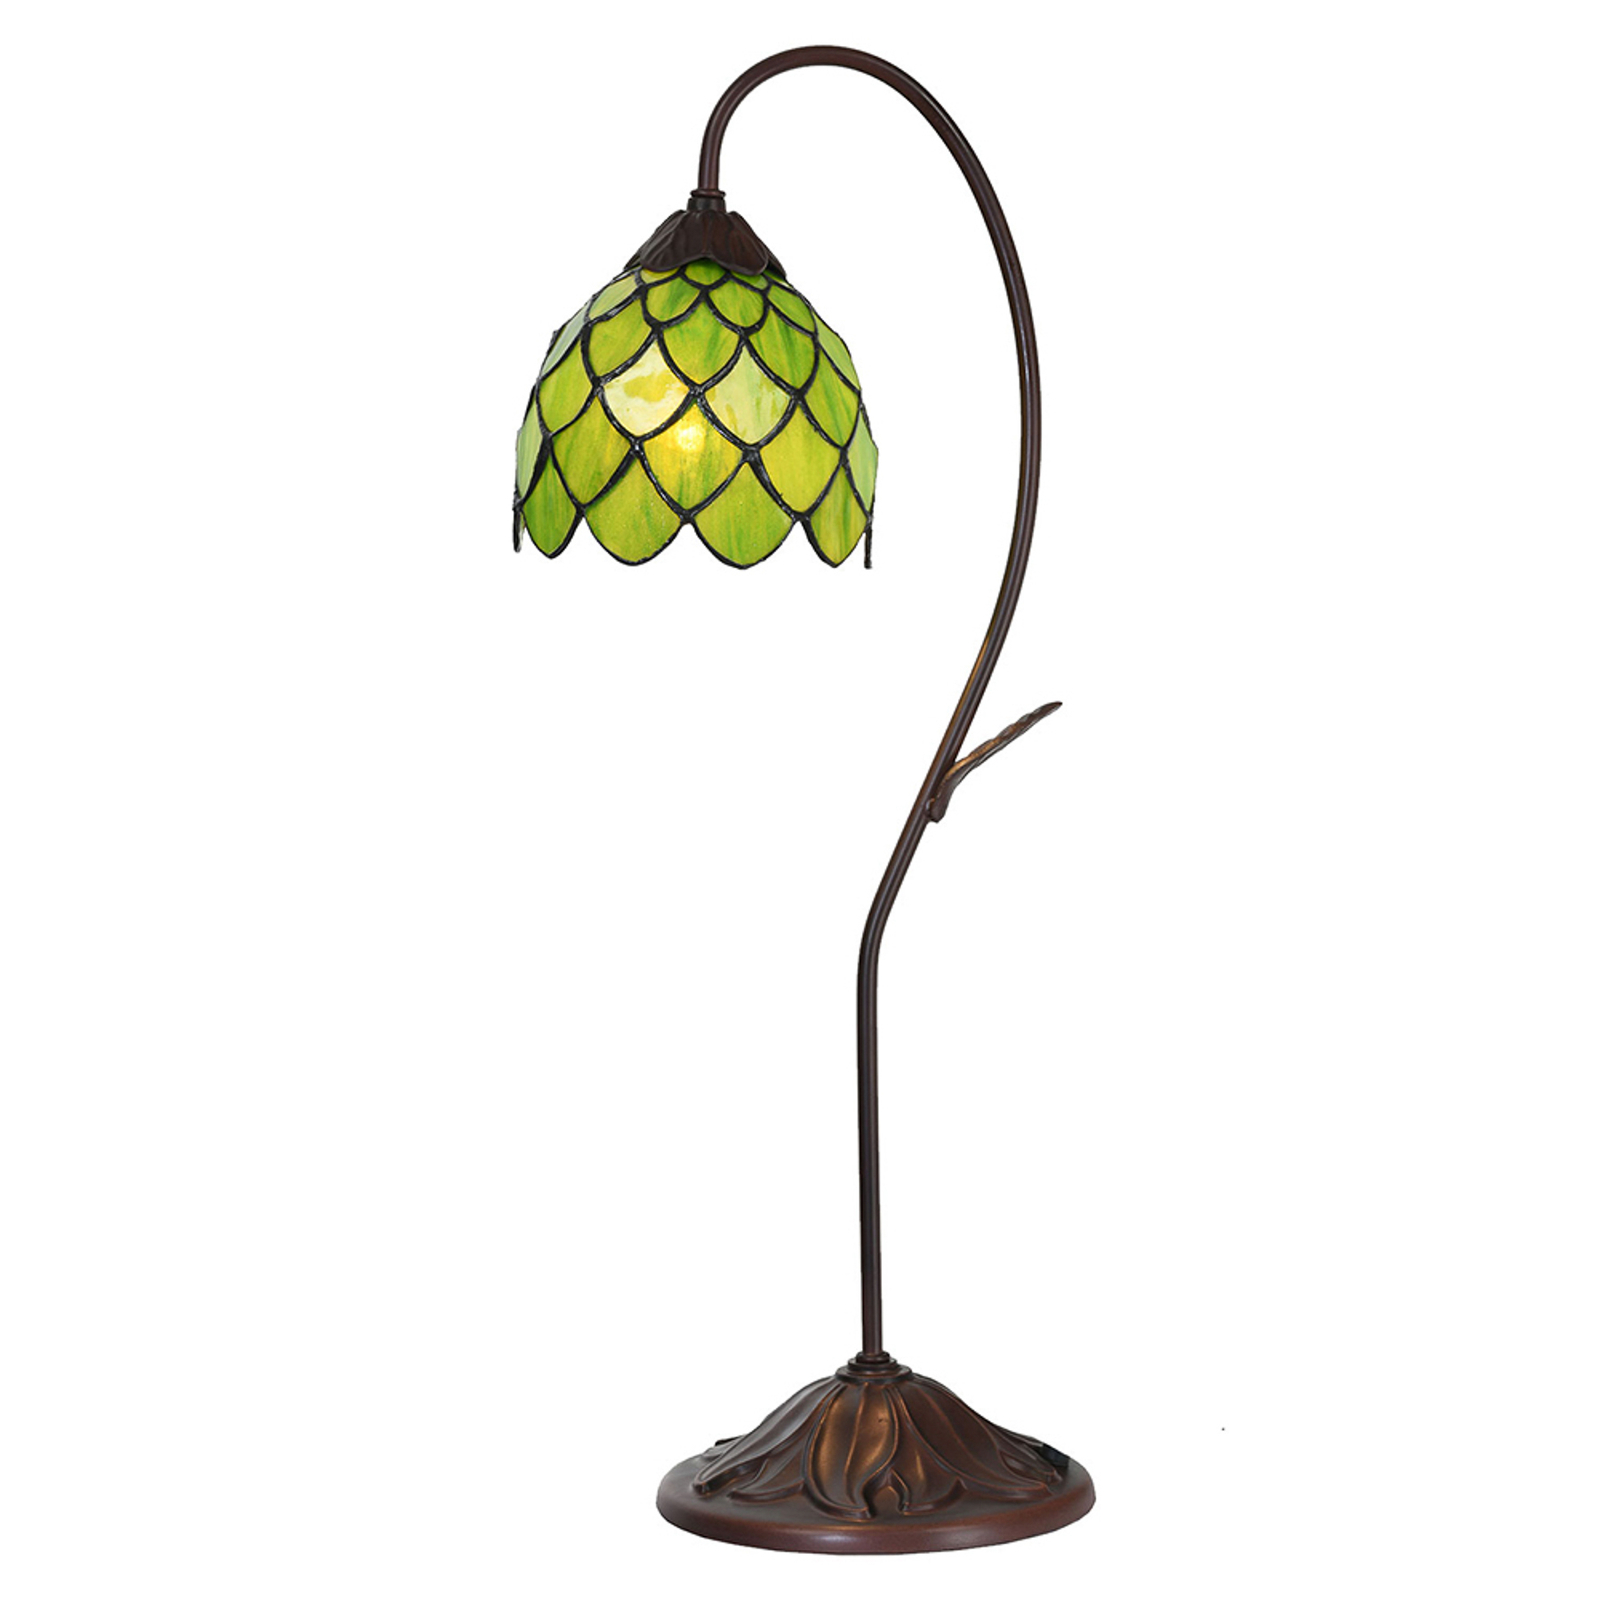 Lampa stołowa 5LL-6045, zielona, w stylu Tiffany